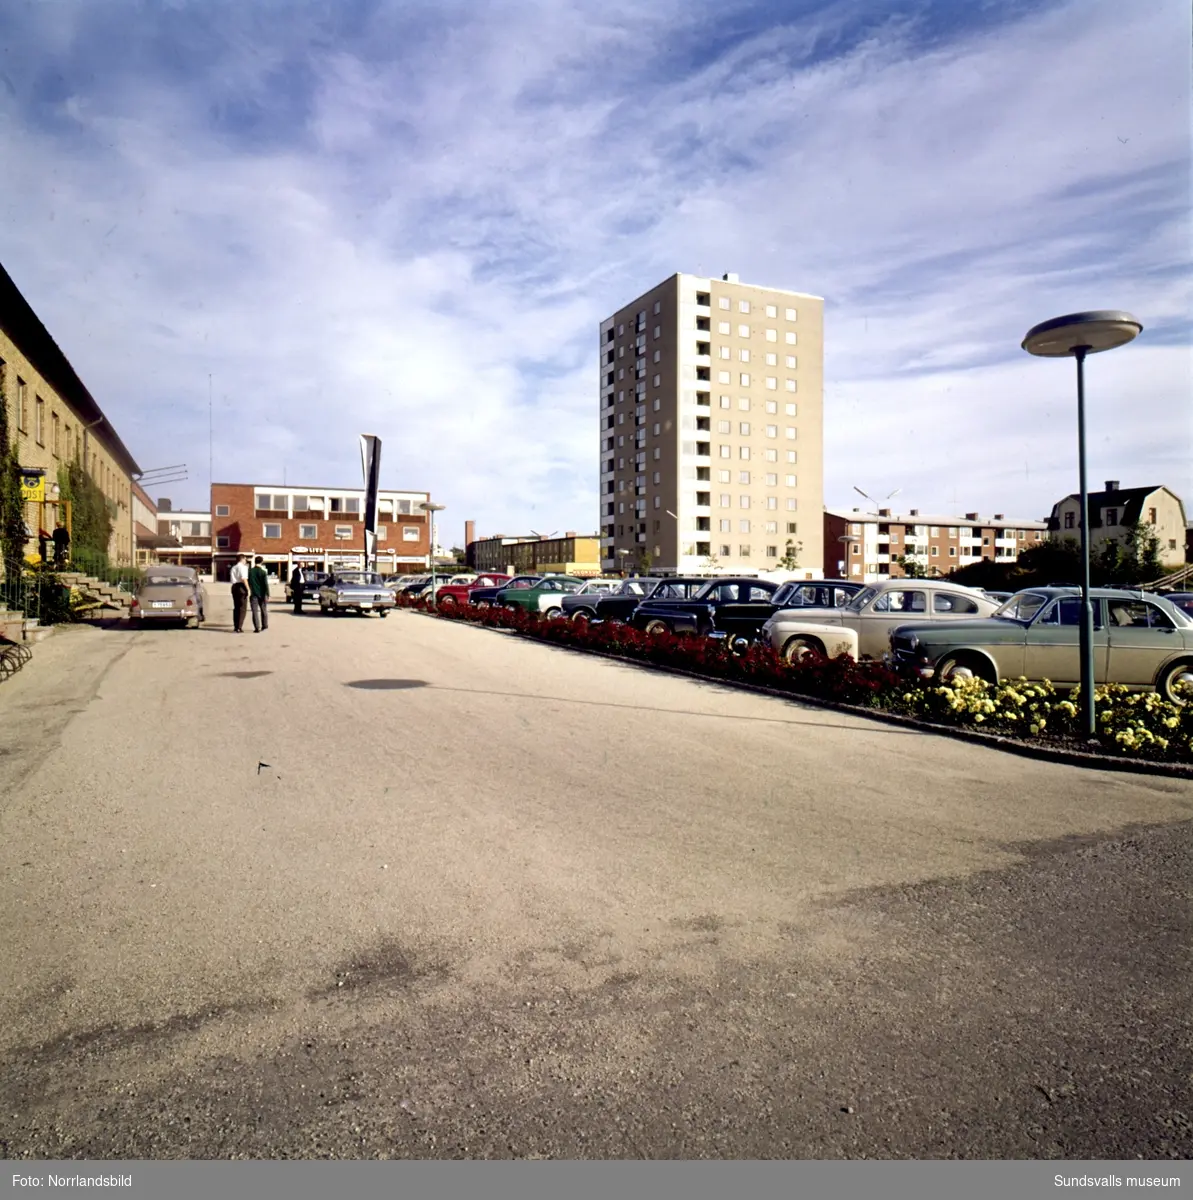 Skönsbergs centrum fotograferat från parkeringen utanför posten mot torget utanför Folkets hus med konstverket Spiral reflex, höghuset, ABE foto ateljé, Borgs Livs, Konsum.